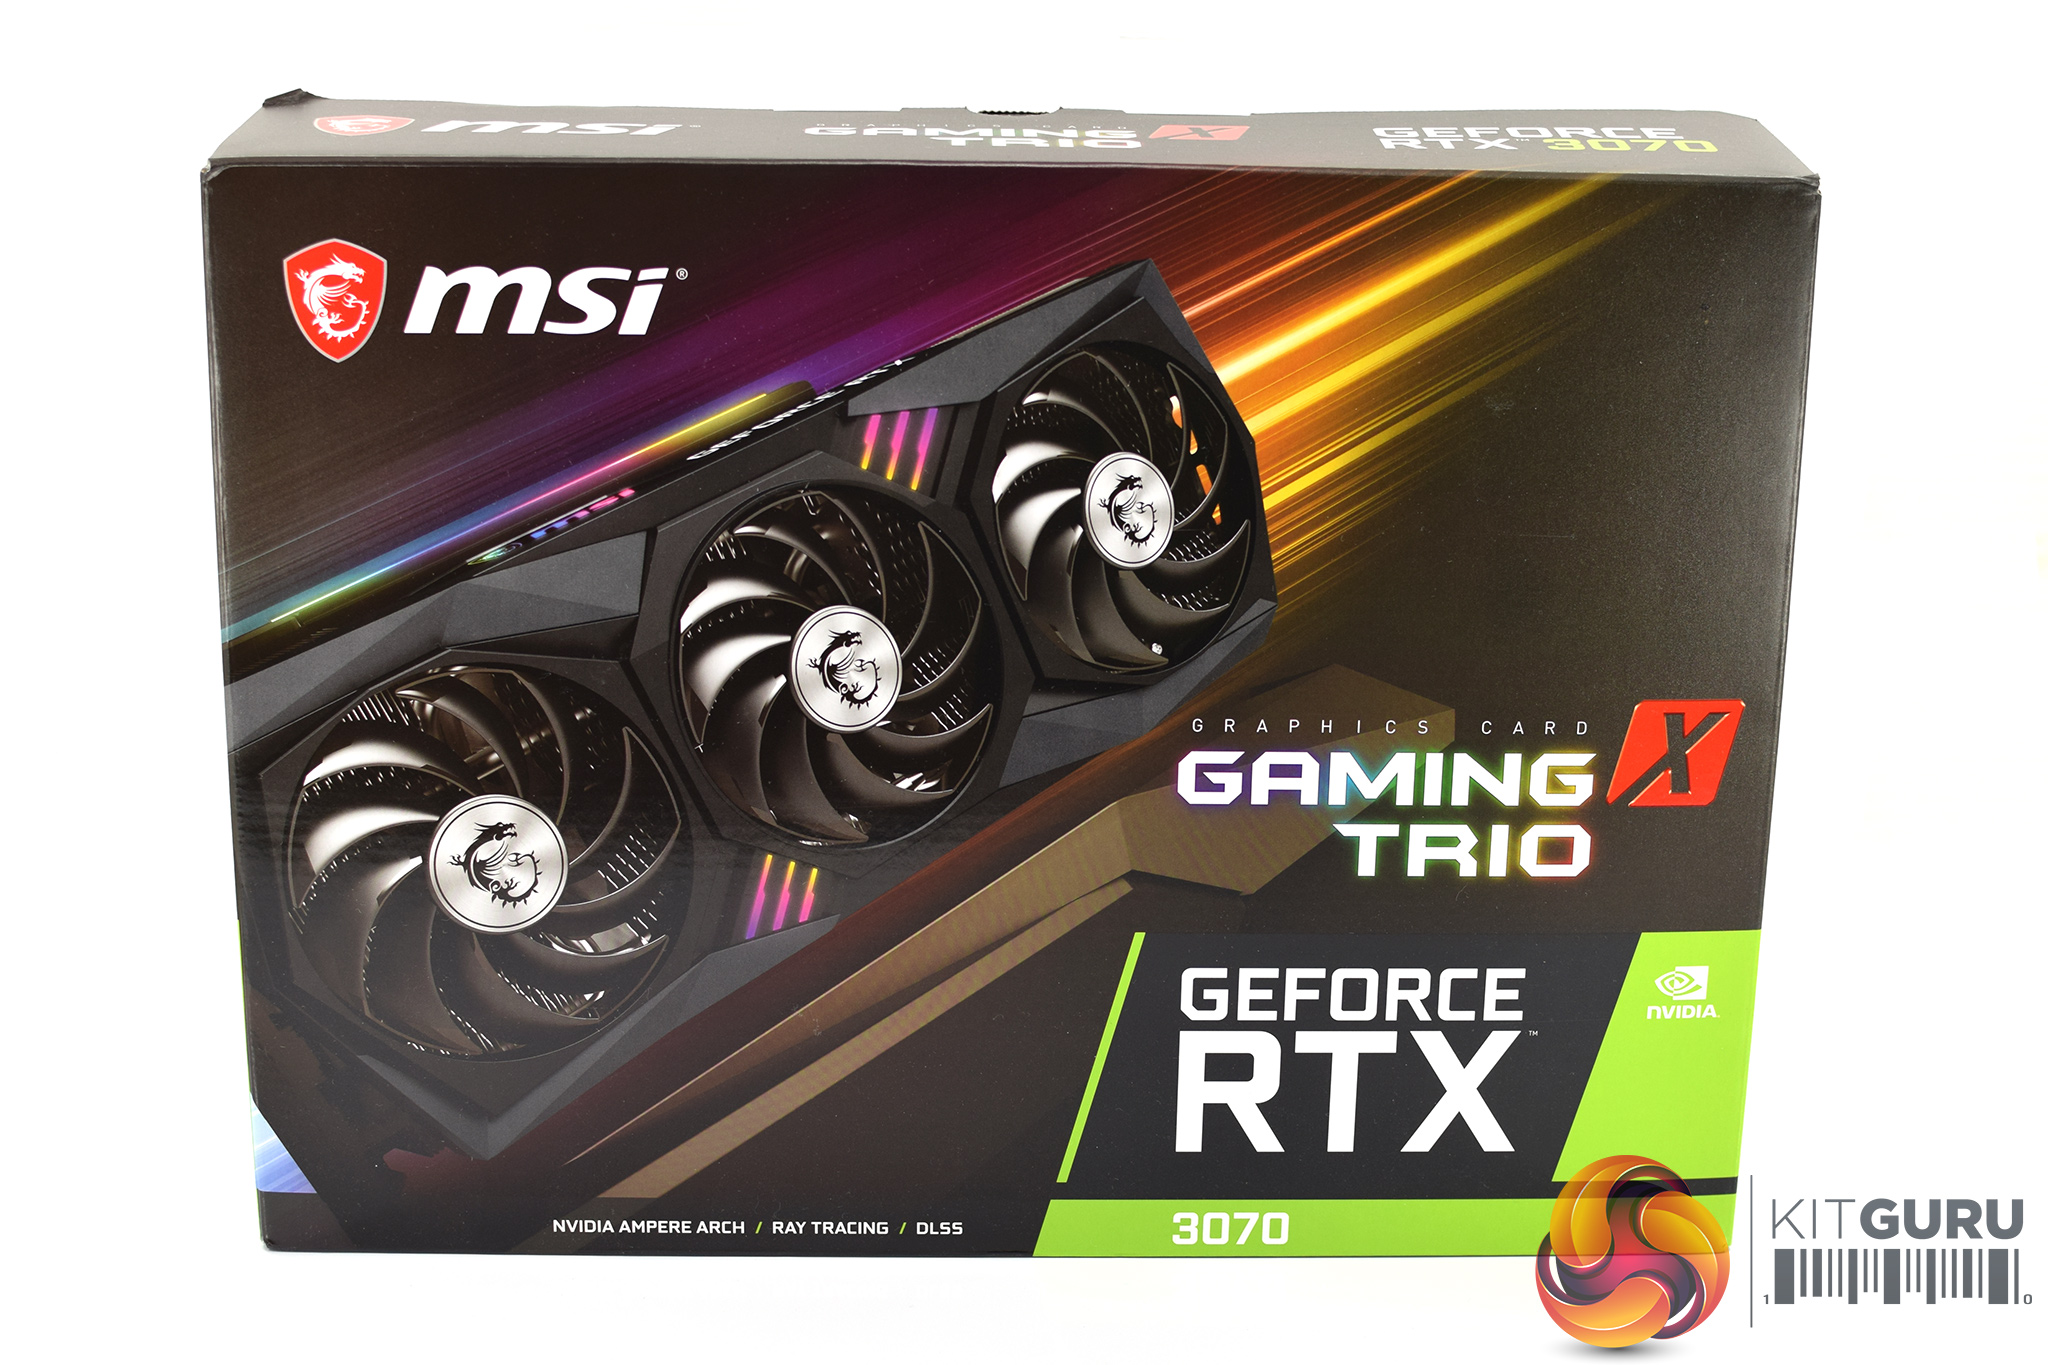 Geforce rtx 3070 gaming x trio. RTX 3060 ti 8gb коробка. RTX 3080 MSI. MSI RTX 3070 ti Gaming Trio. RTX 3060 MSI 8gb.